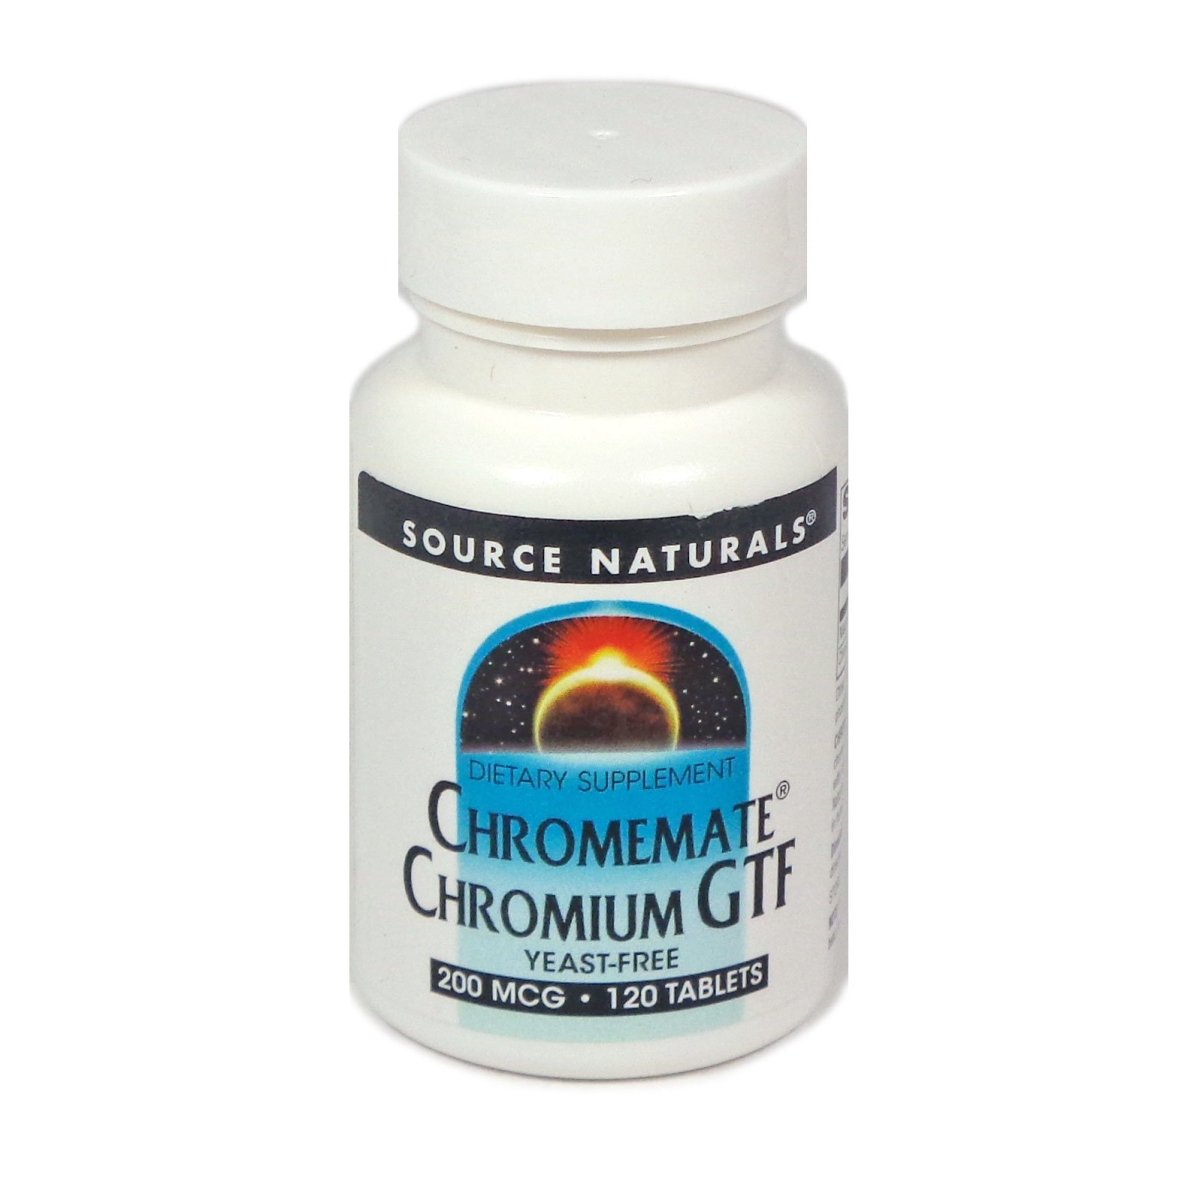 Chromemate CHROMIUM GTF 200MCG 120 Tablets